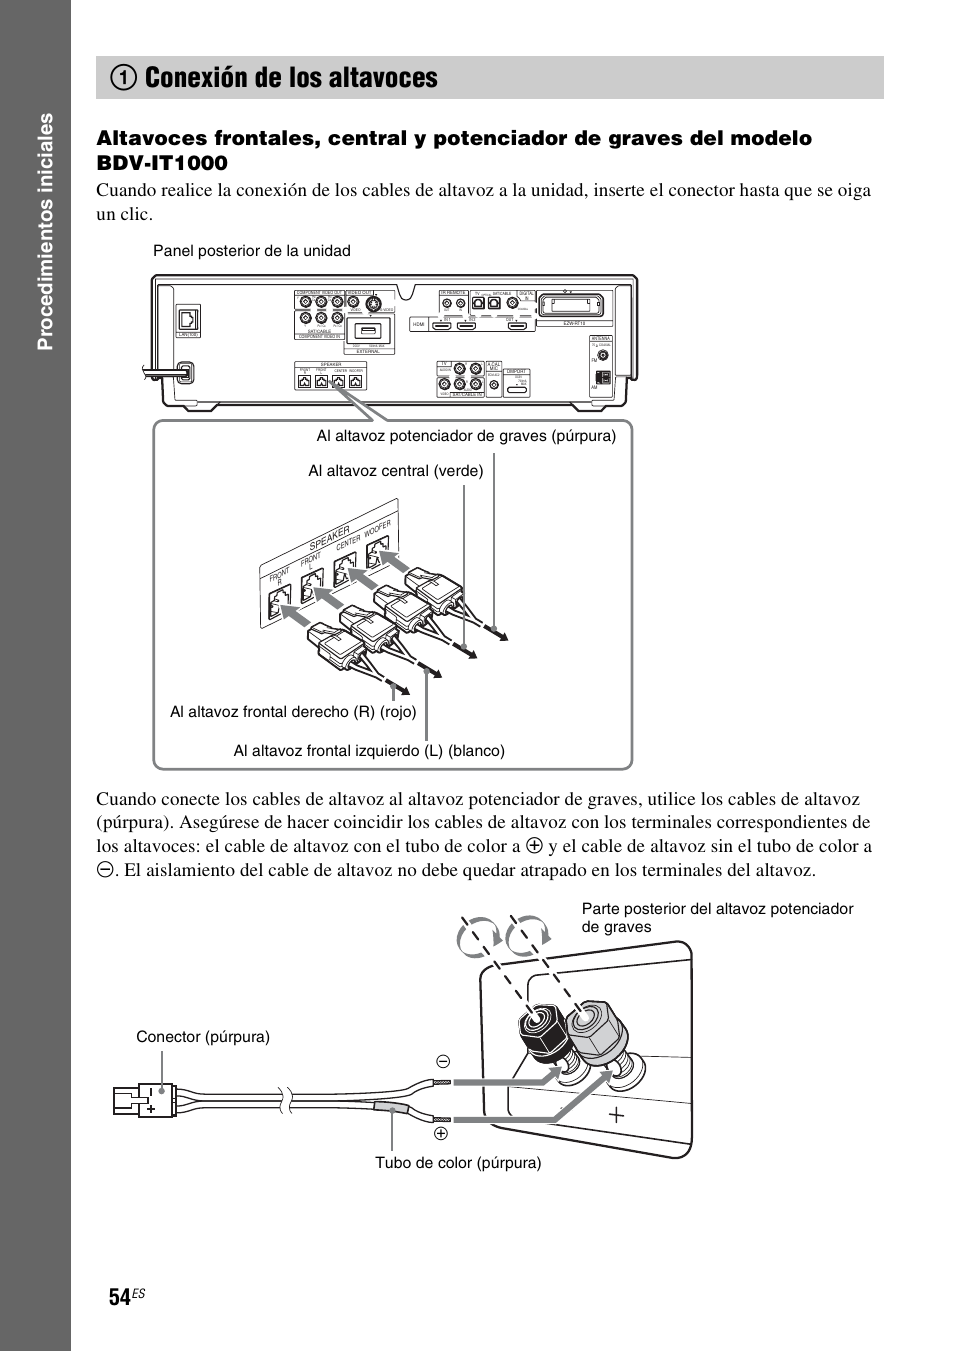 1 conexión de los altavoces, 1conexión de los altavoces | Sony BDV-IS1000 Manual del usuario | Página 54 / 315